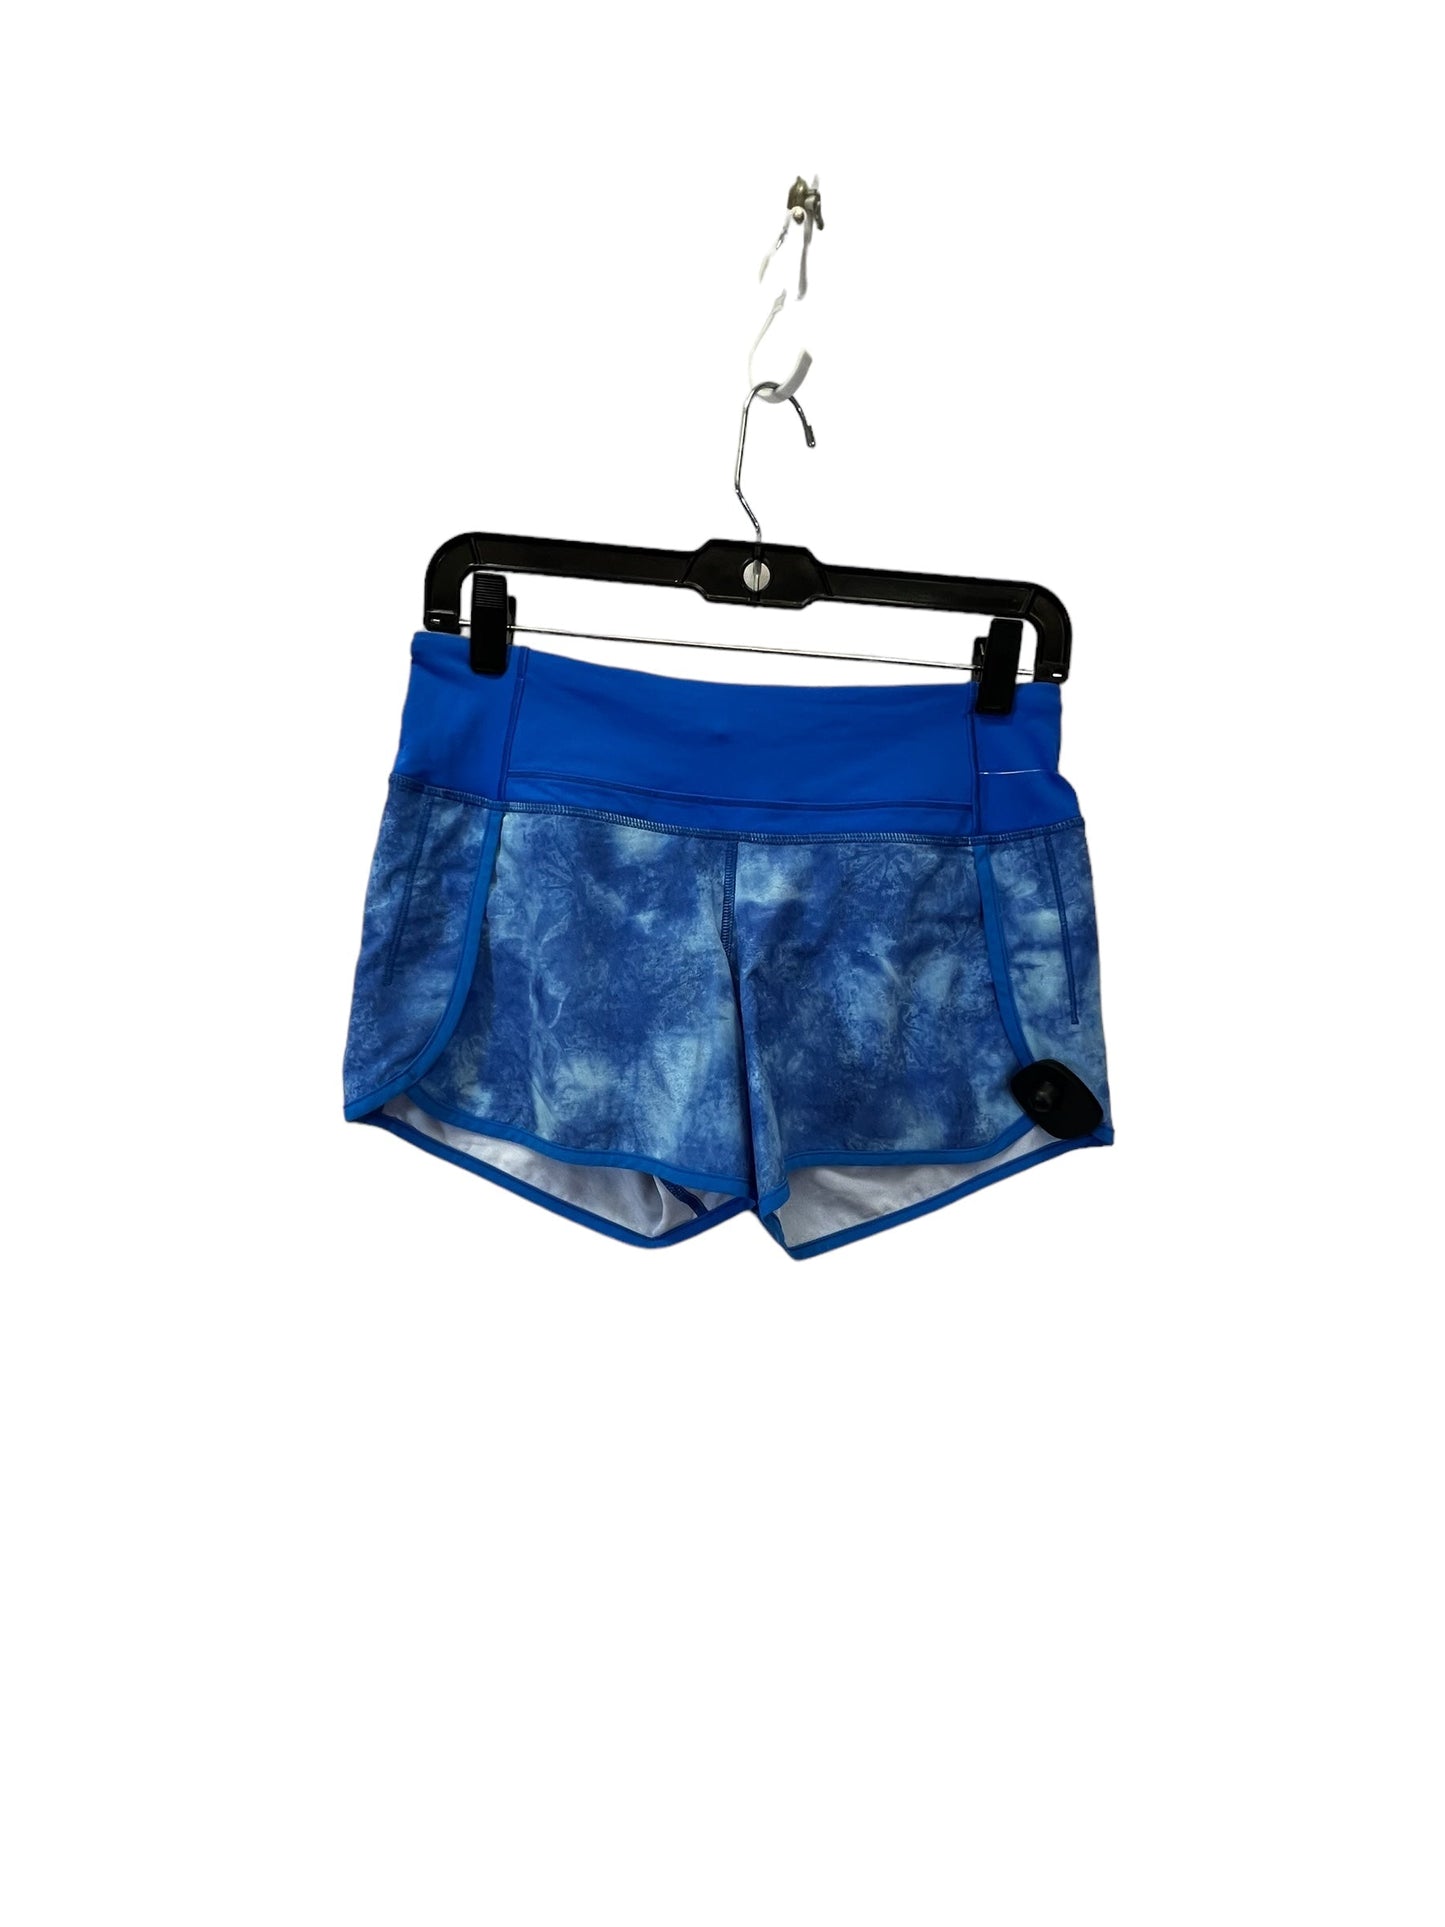 Blue & White Athletic Shorts Lululemon, Size 4